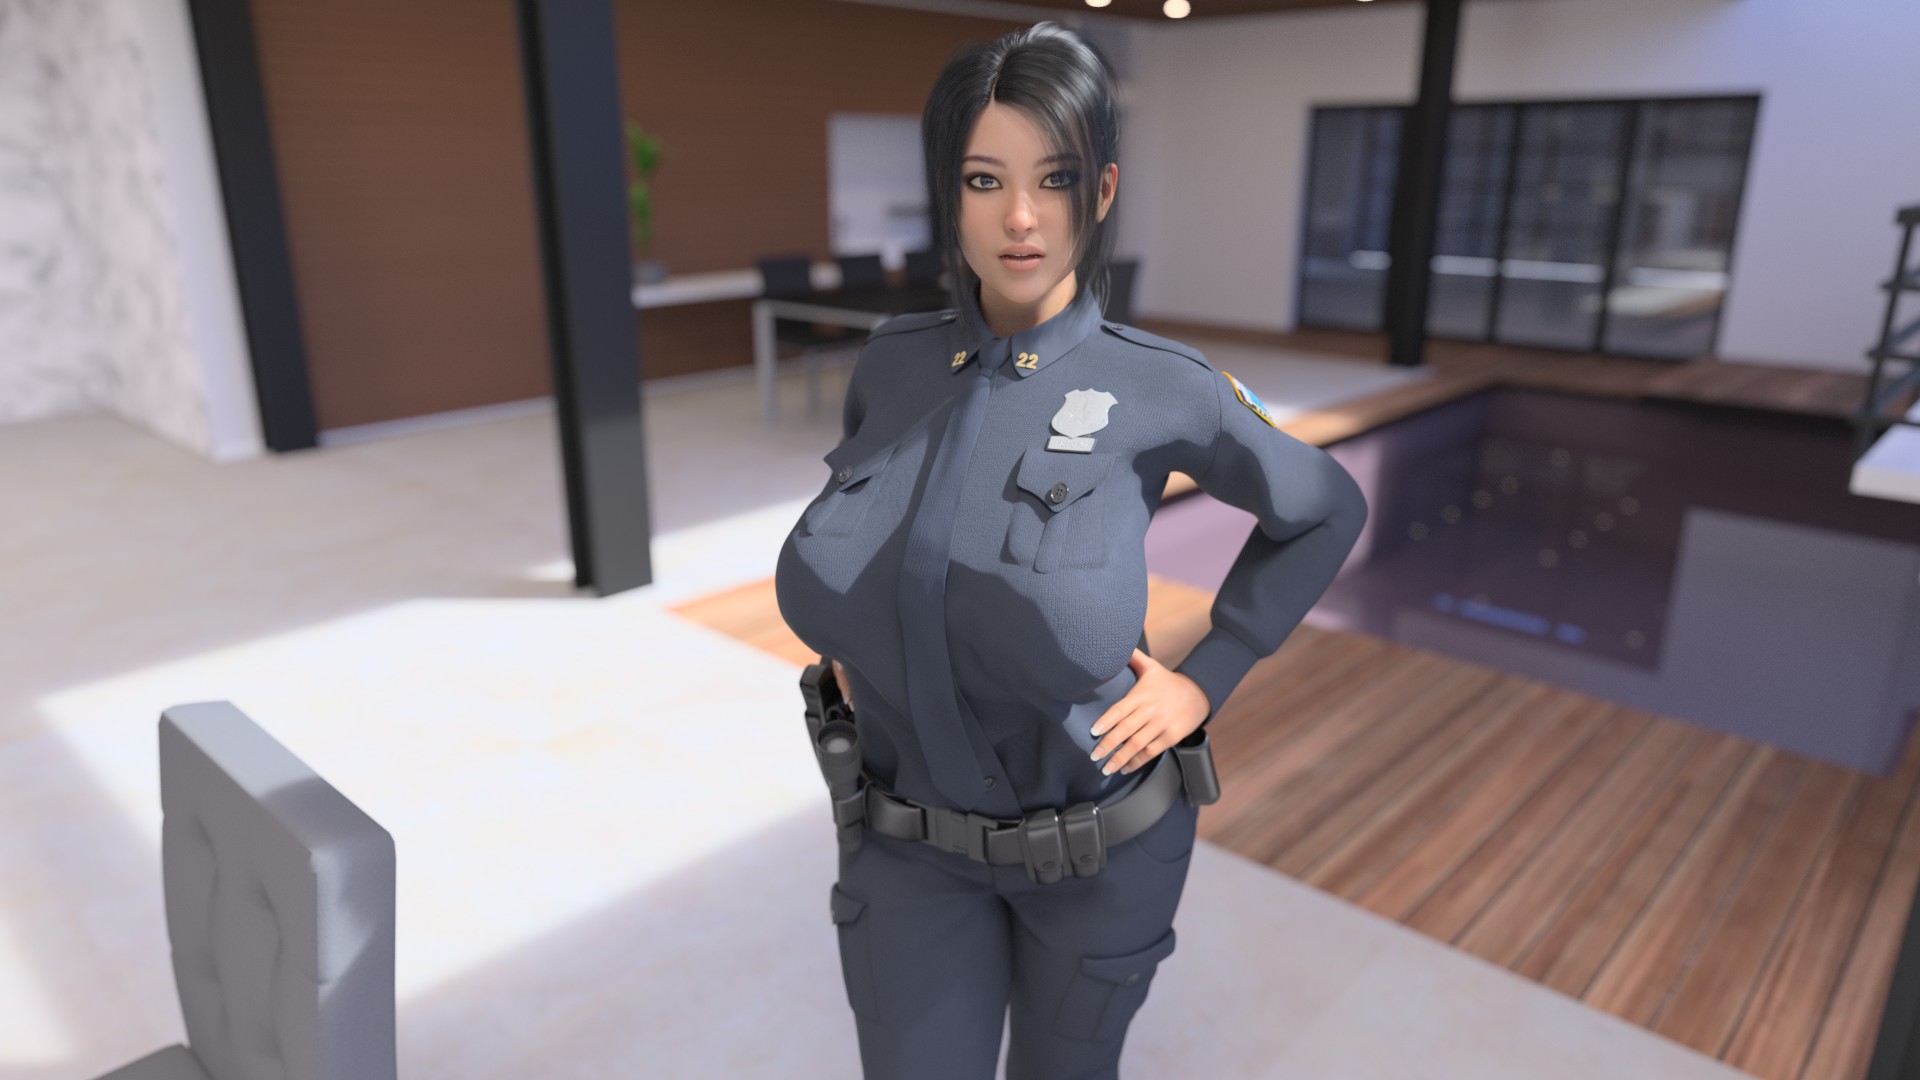 Officer juggs mnf